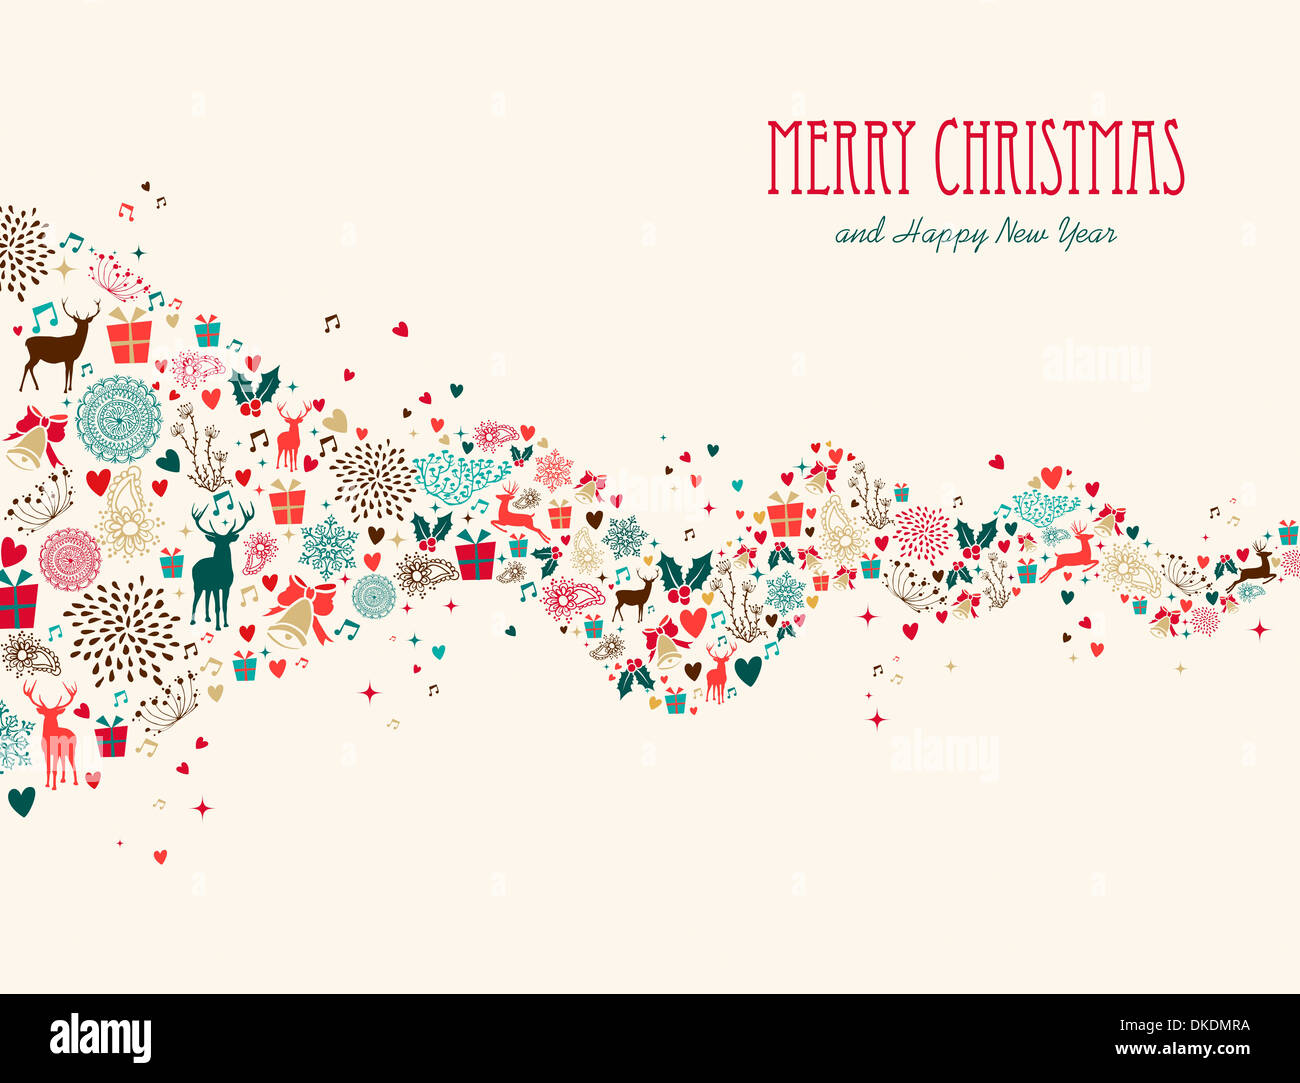 Merry Christmas greeting card illustrazione con icone e simboli. EPS10 vettore. Foto Stock